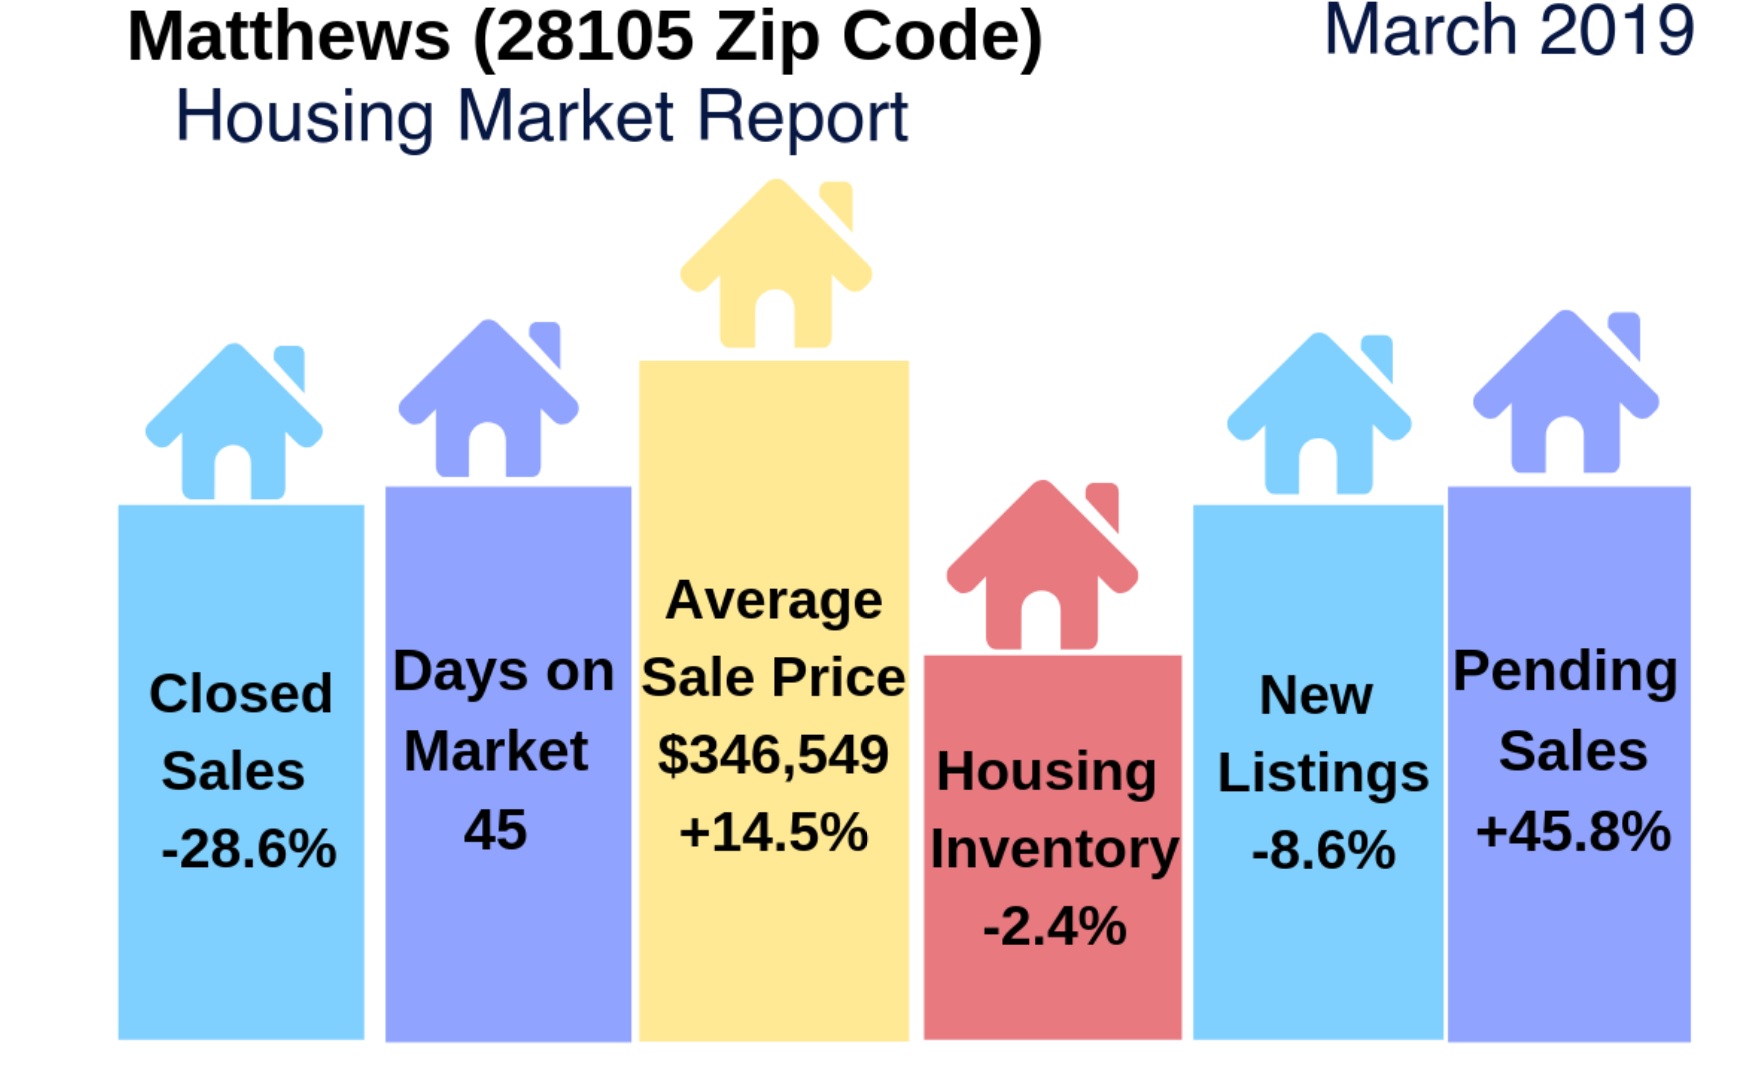 Matthews (28105 Zip Code) Housing Report/Video: March 2019